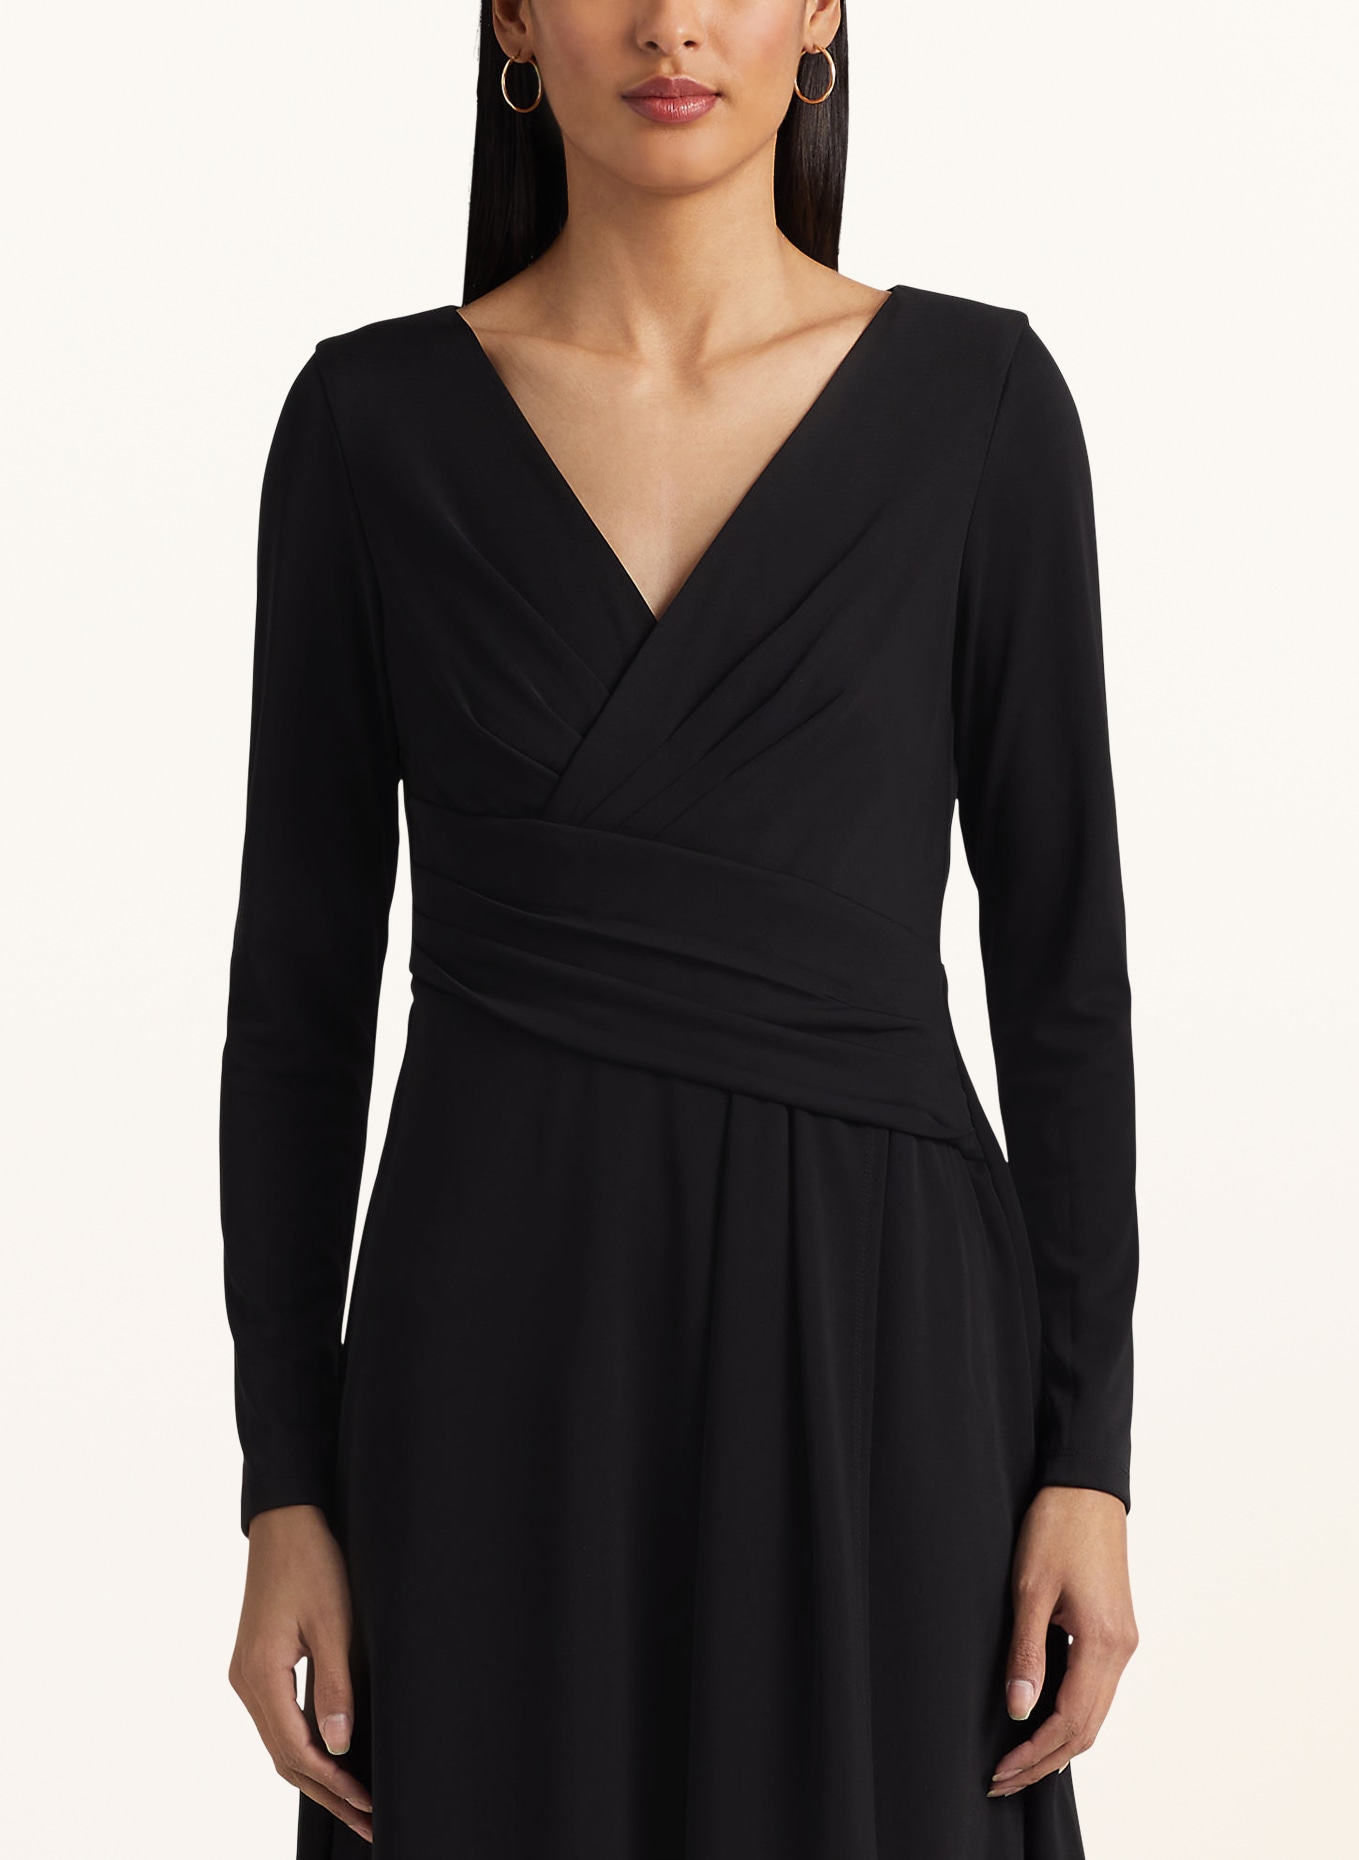 LAUREN RALPH LAUREN Jersey dress, Color: BLACK (Image 4)